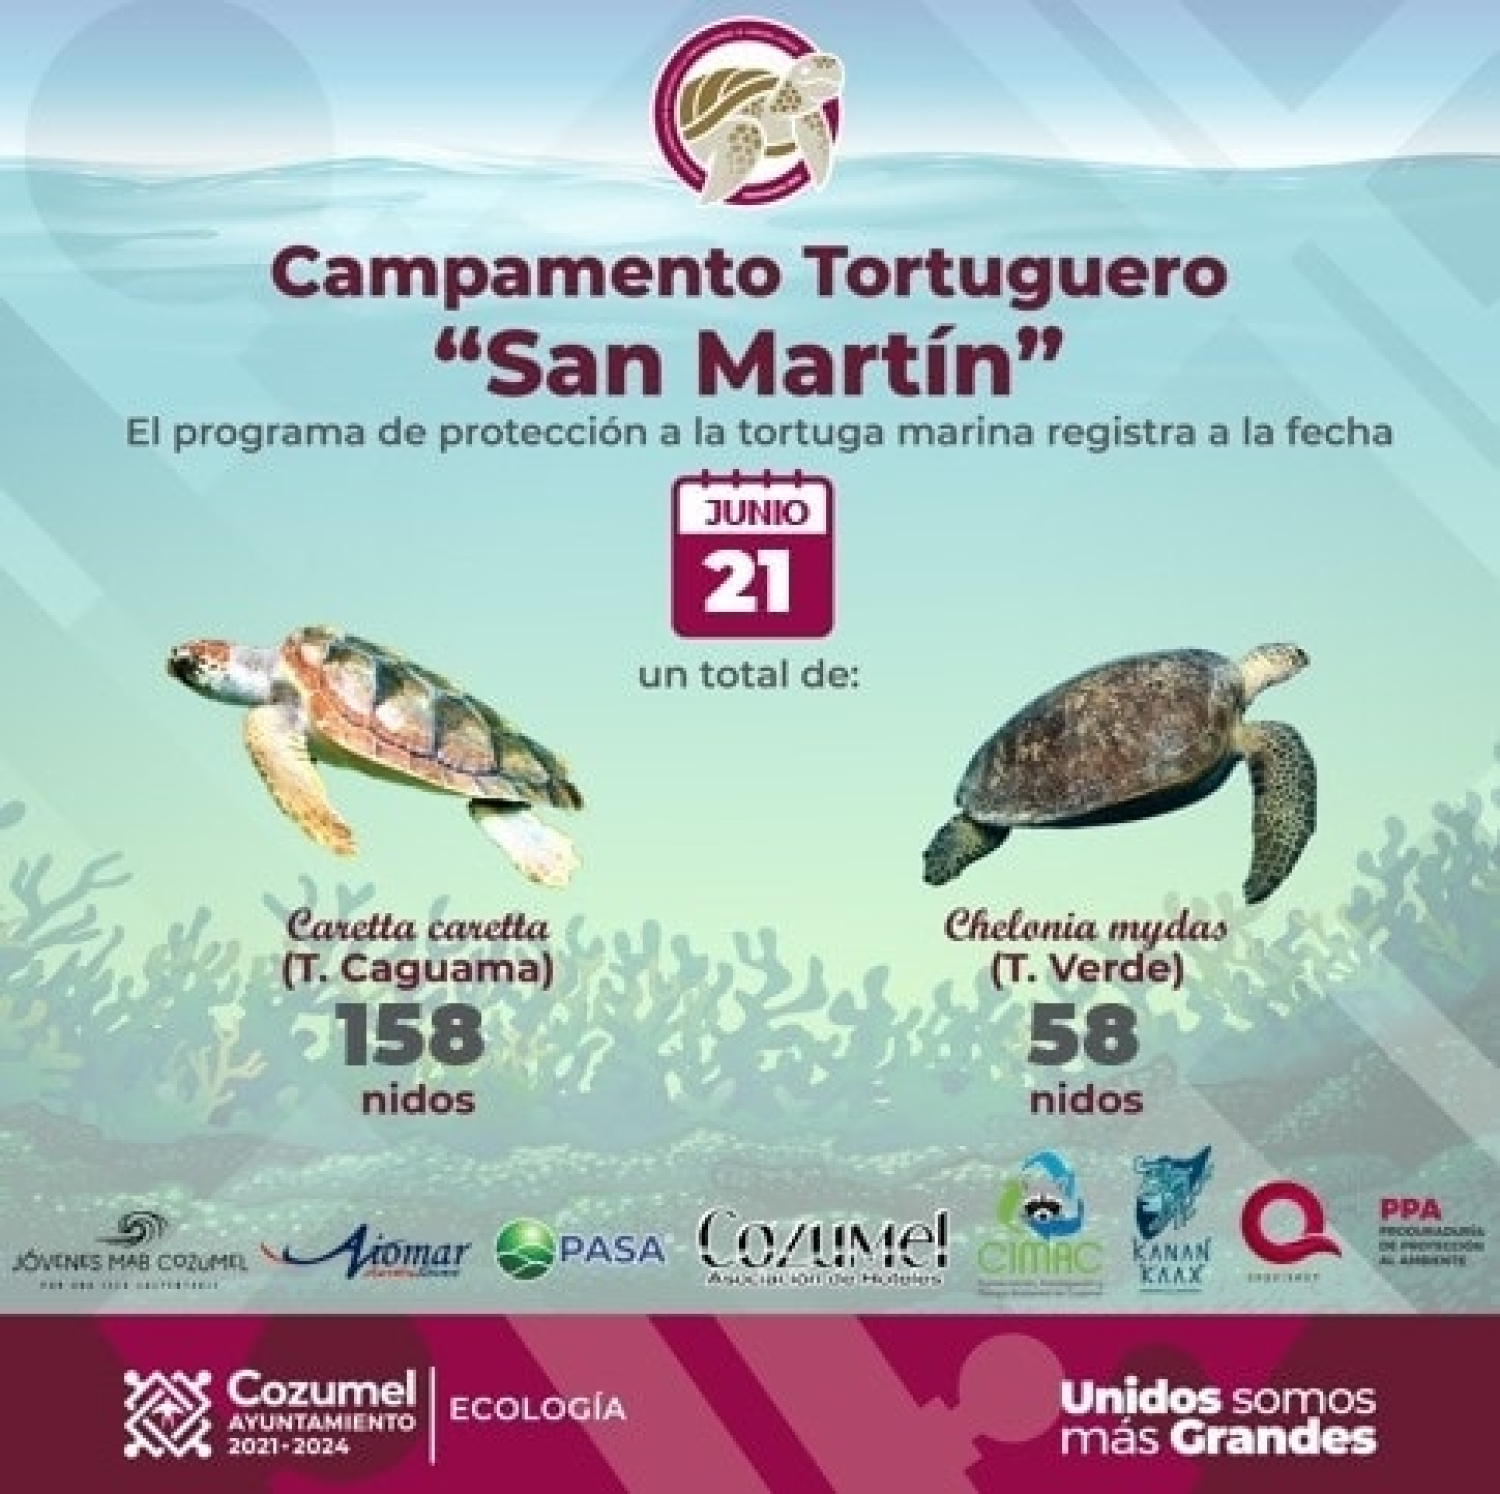 El Campamento Tortuguero contabiliza más de 200 nidos de tortuga marina